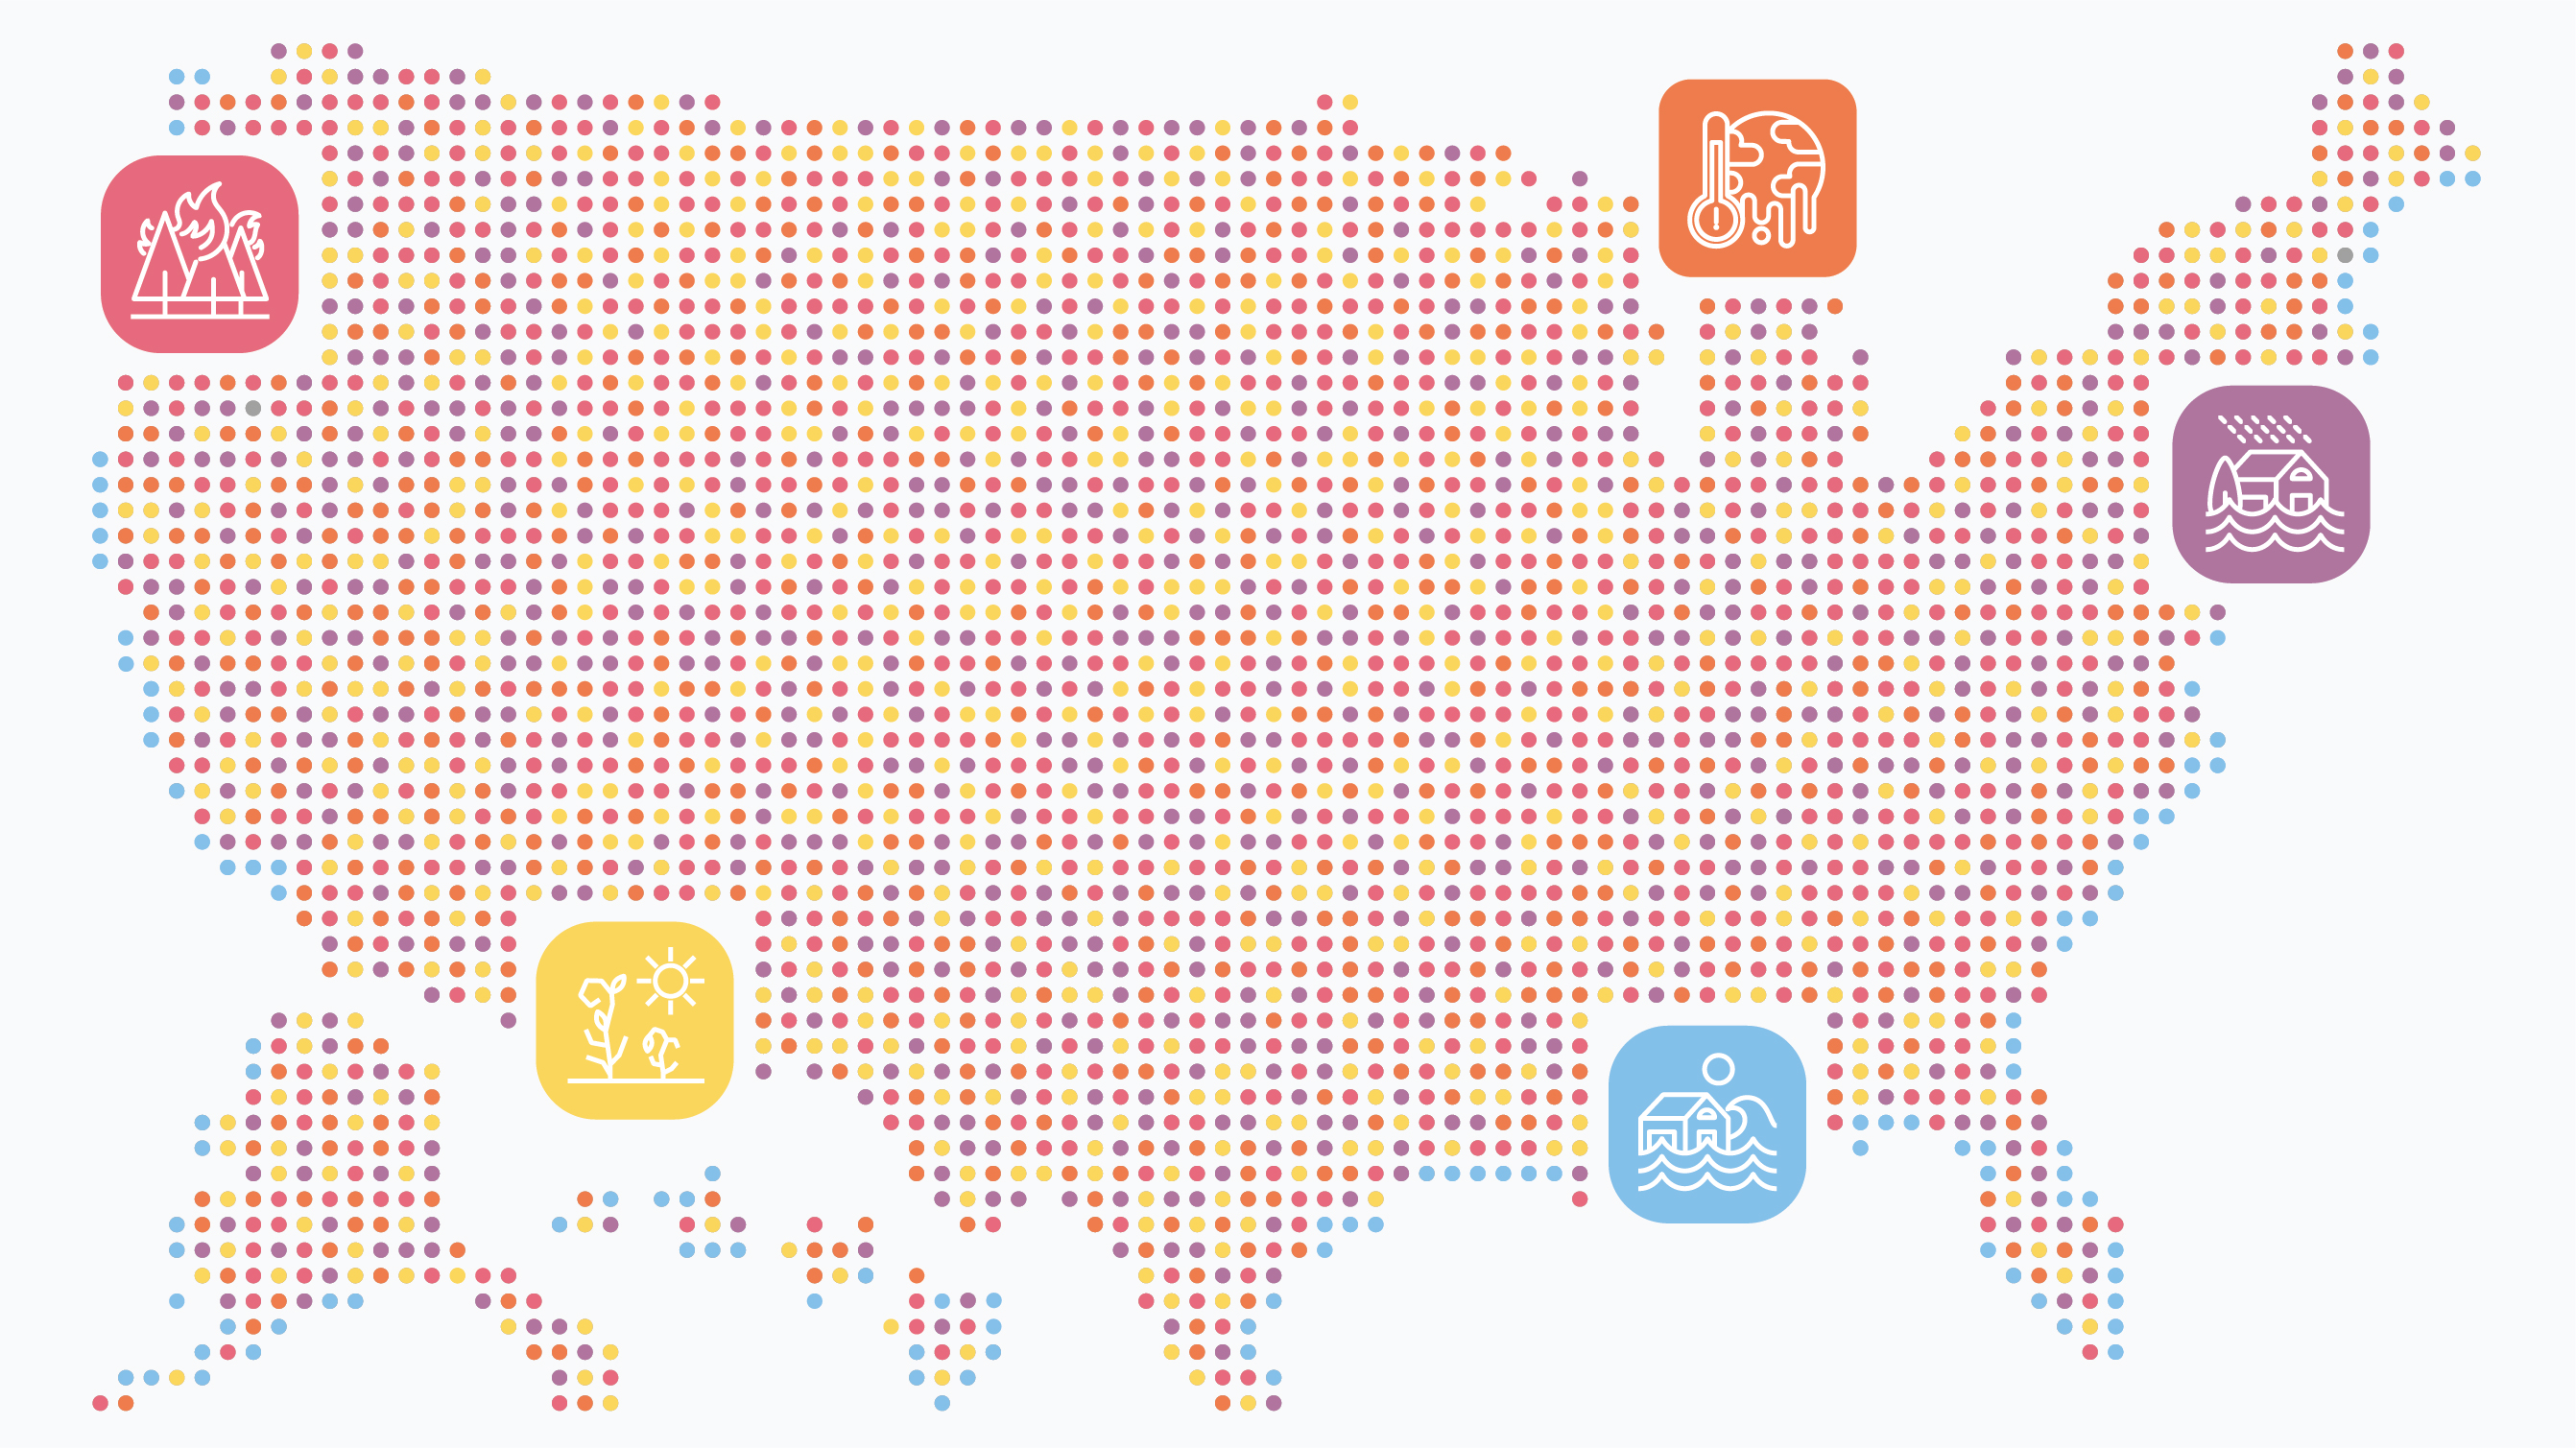 Eine Grafik der Vereinigten Staaten, bestehend aus einem mehrfarbigen Punktraster mit überlagerten Symbolen für Überschwemmungen, Waldbrände und Extremwetter